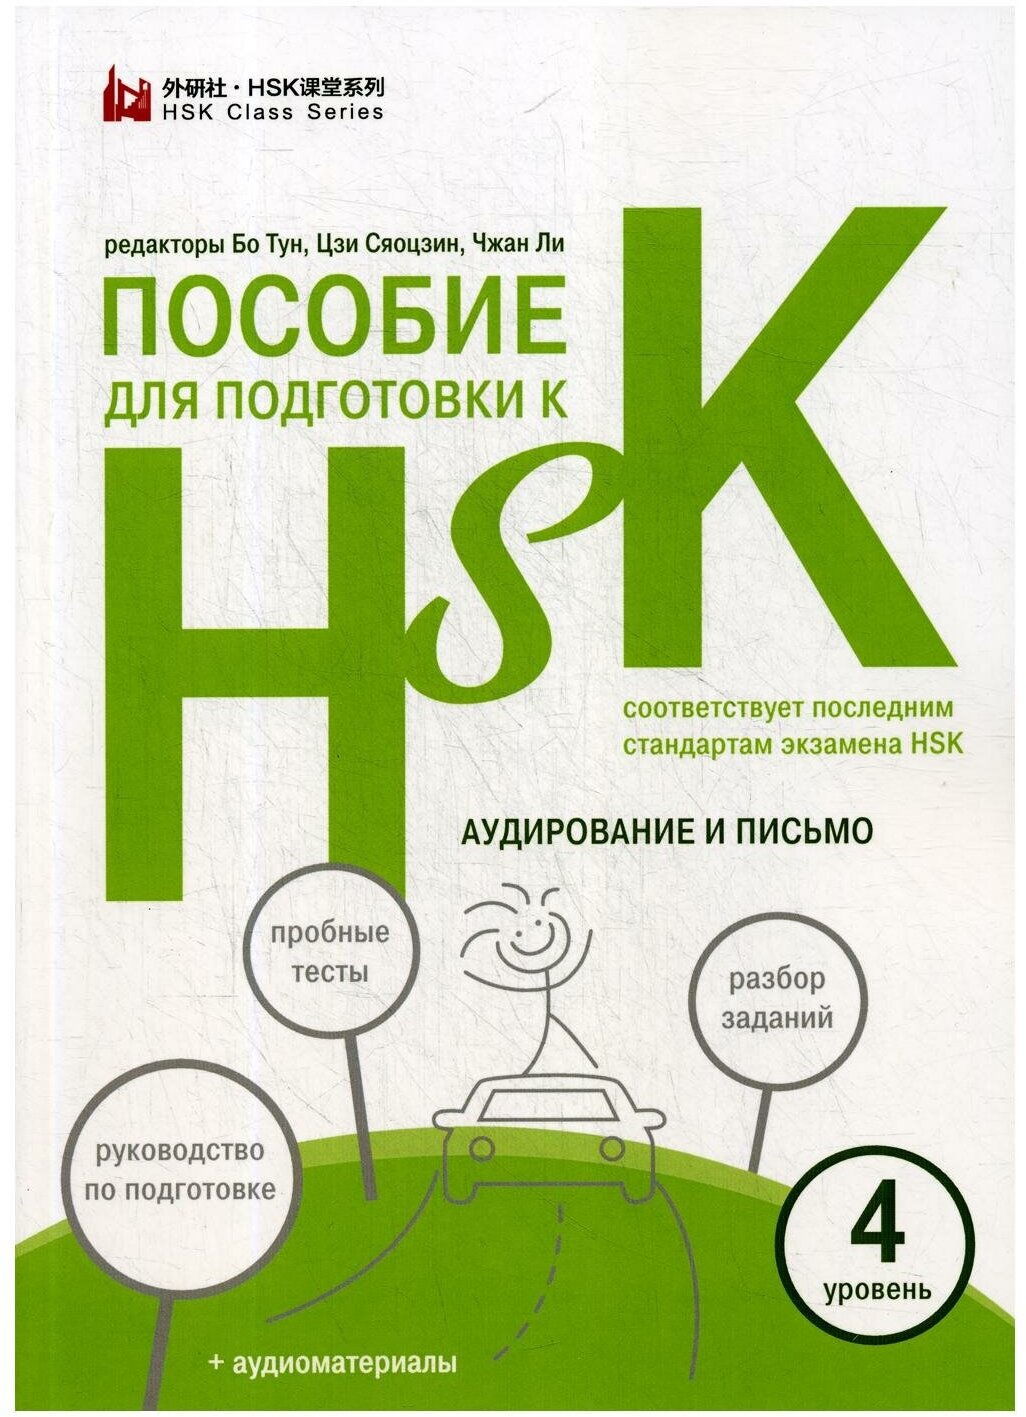 Пособие для подготовки к HSK. 4 уровень. Аудирование и письмо - фото №1